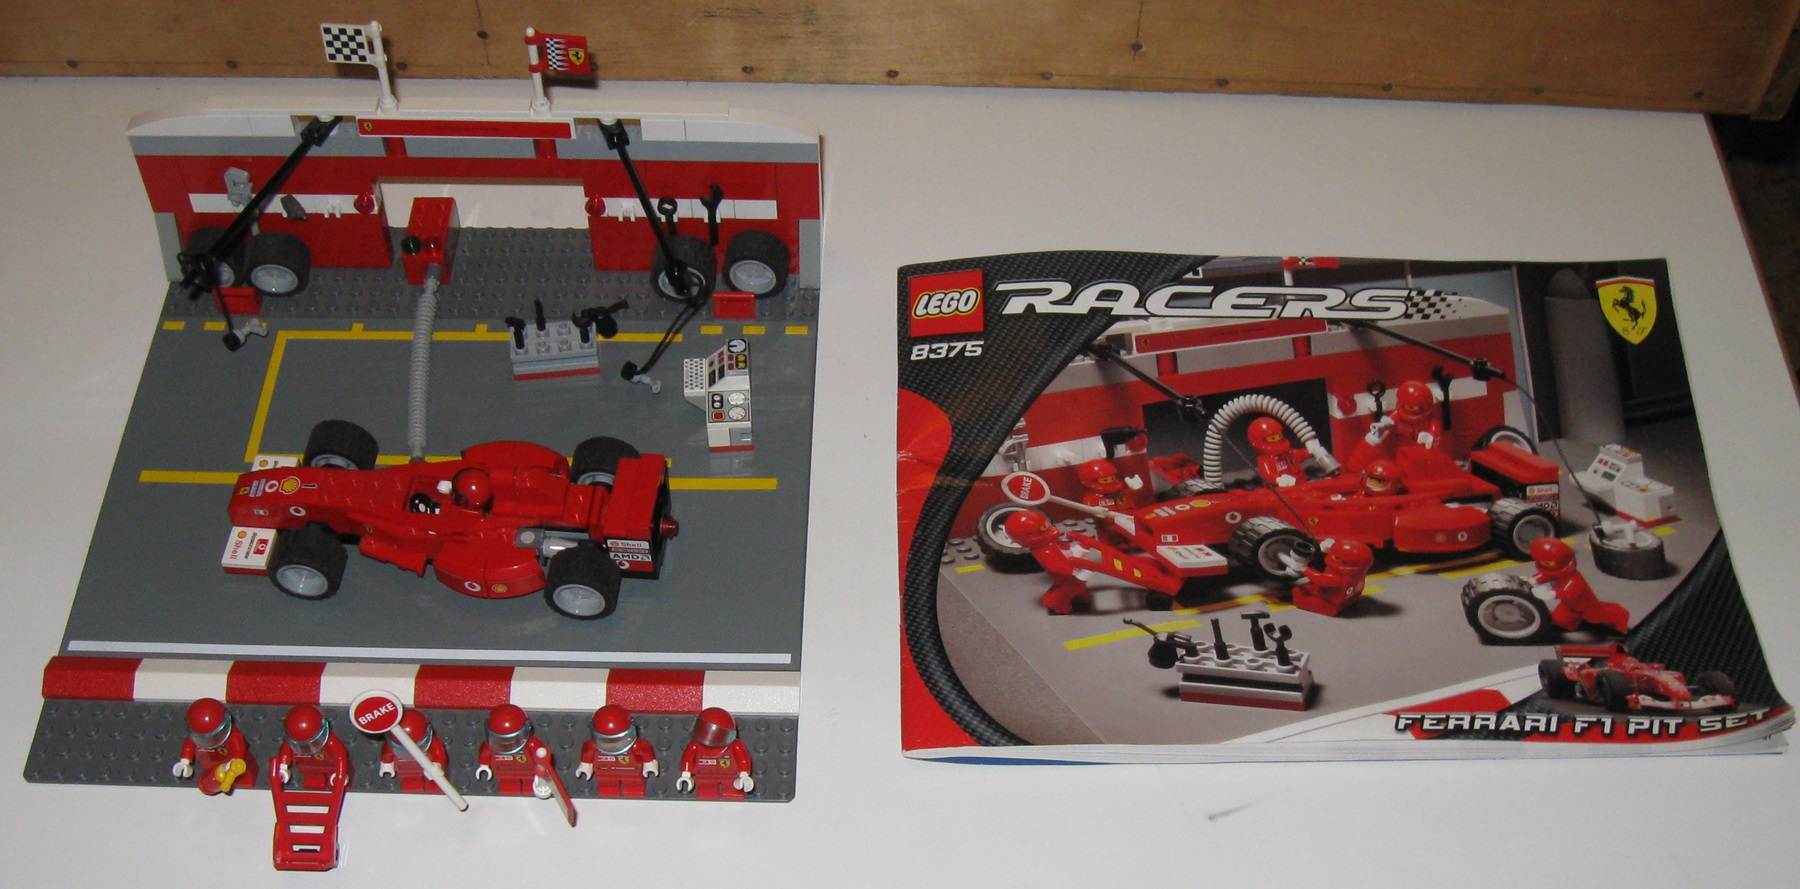 0100 Lego Racers 8375